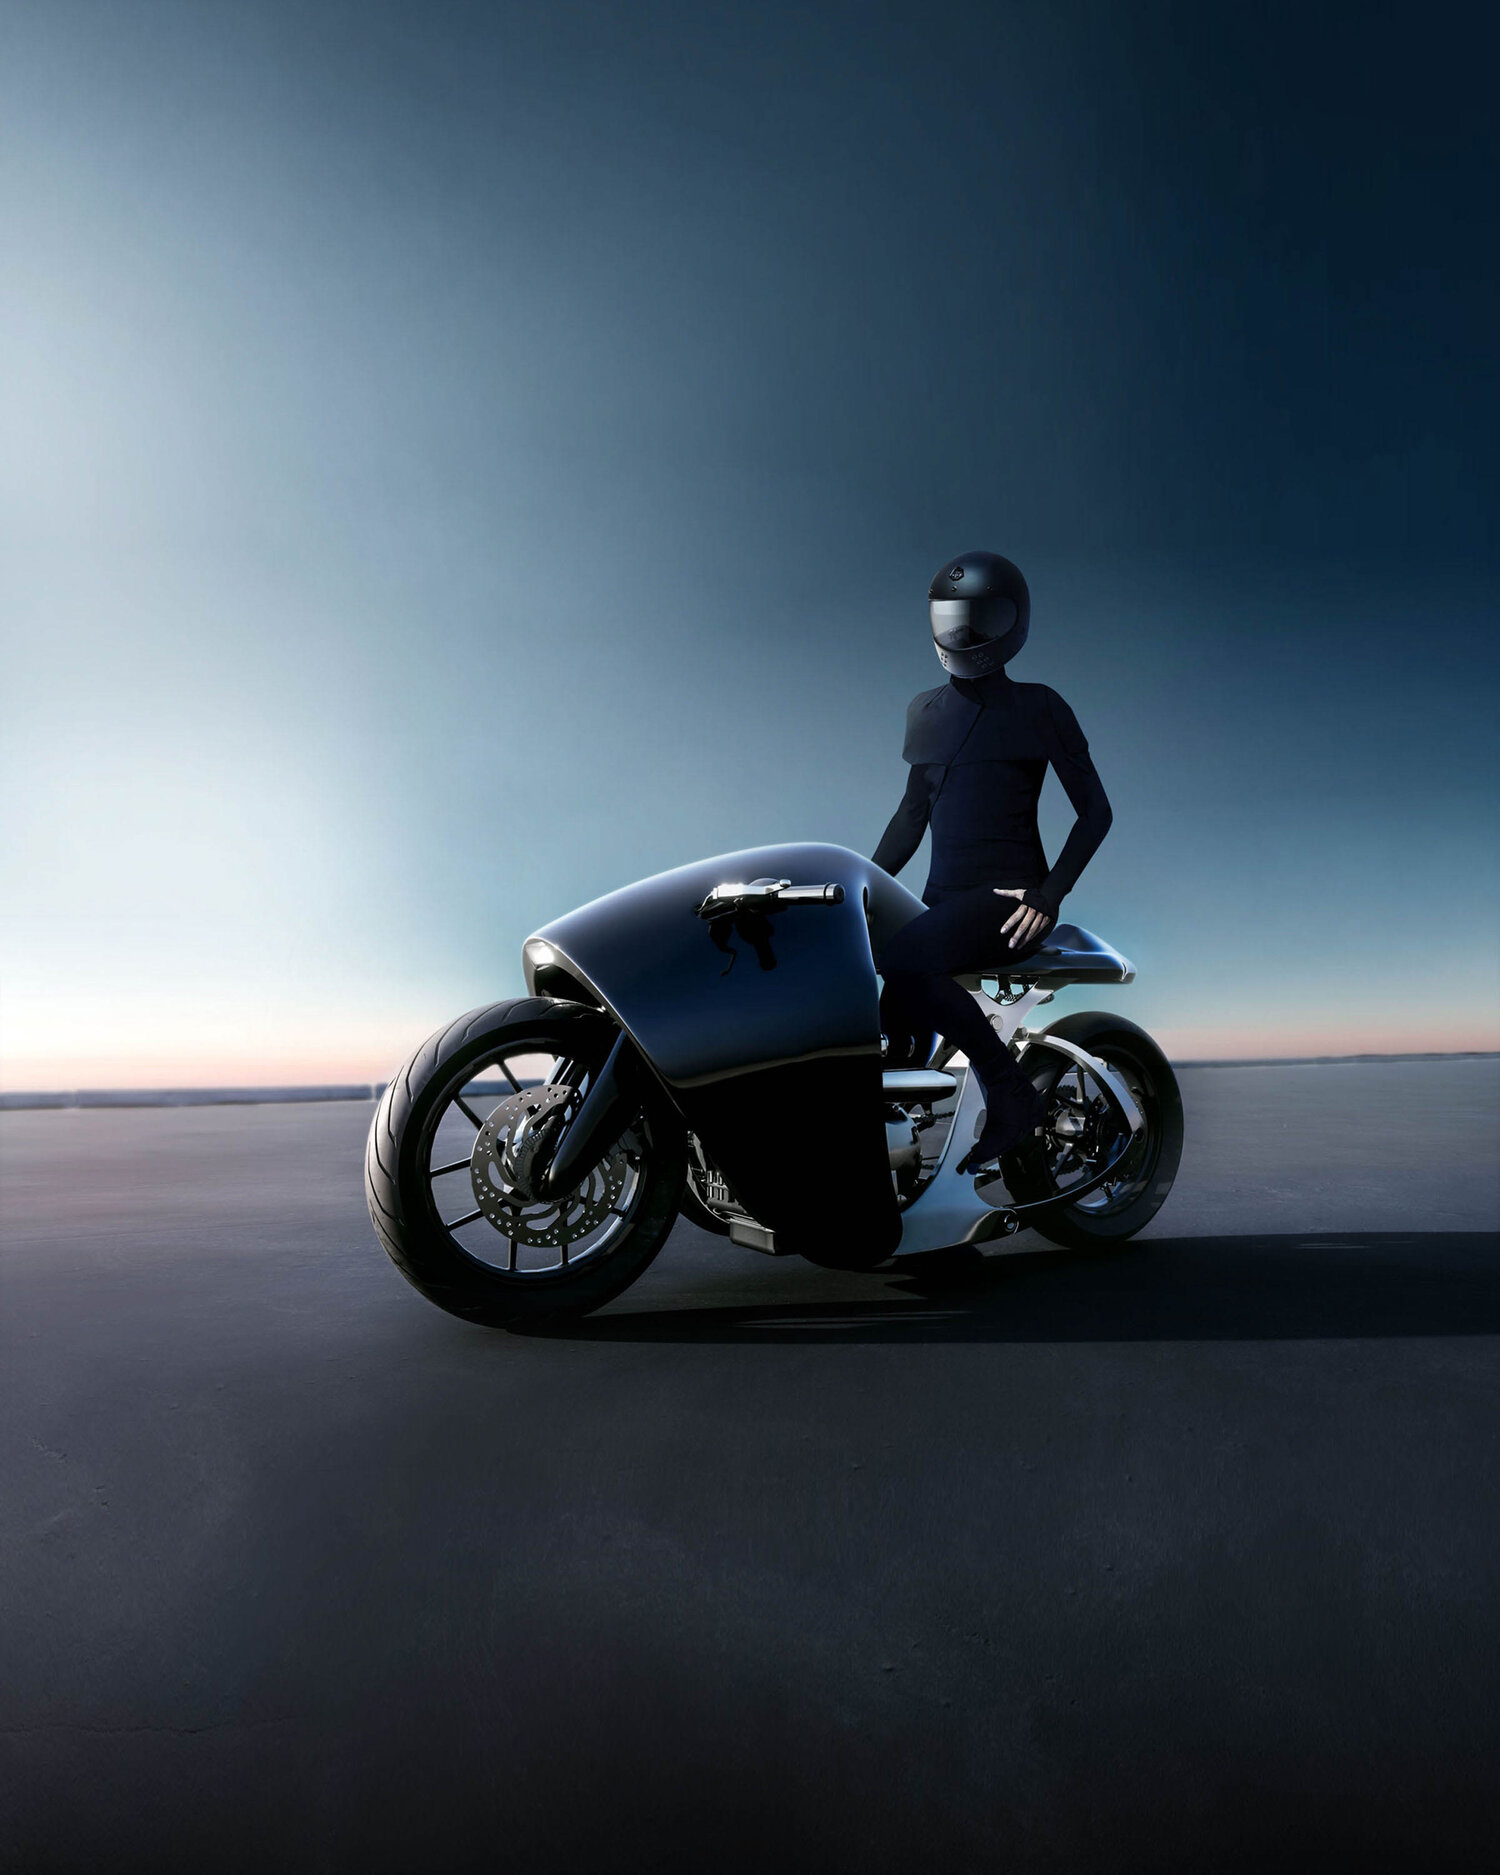 imagen 8 de The Supermarine. La nueva y espectacular motocicleta de Bandit9.